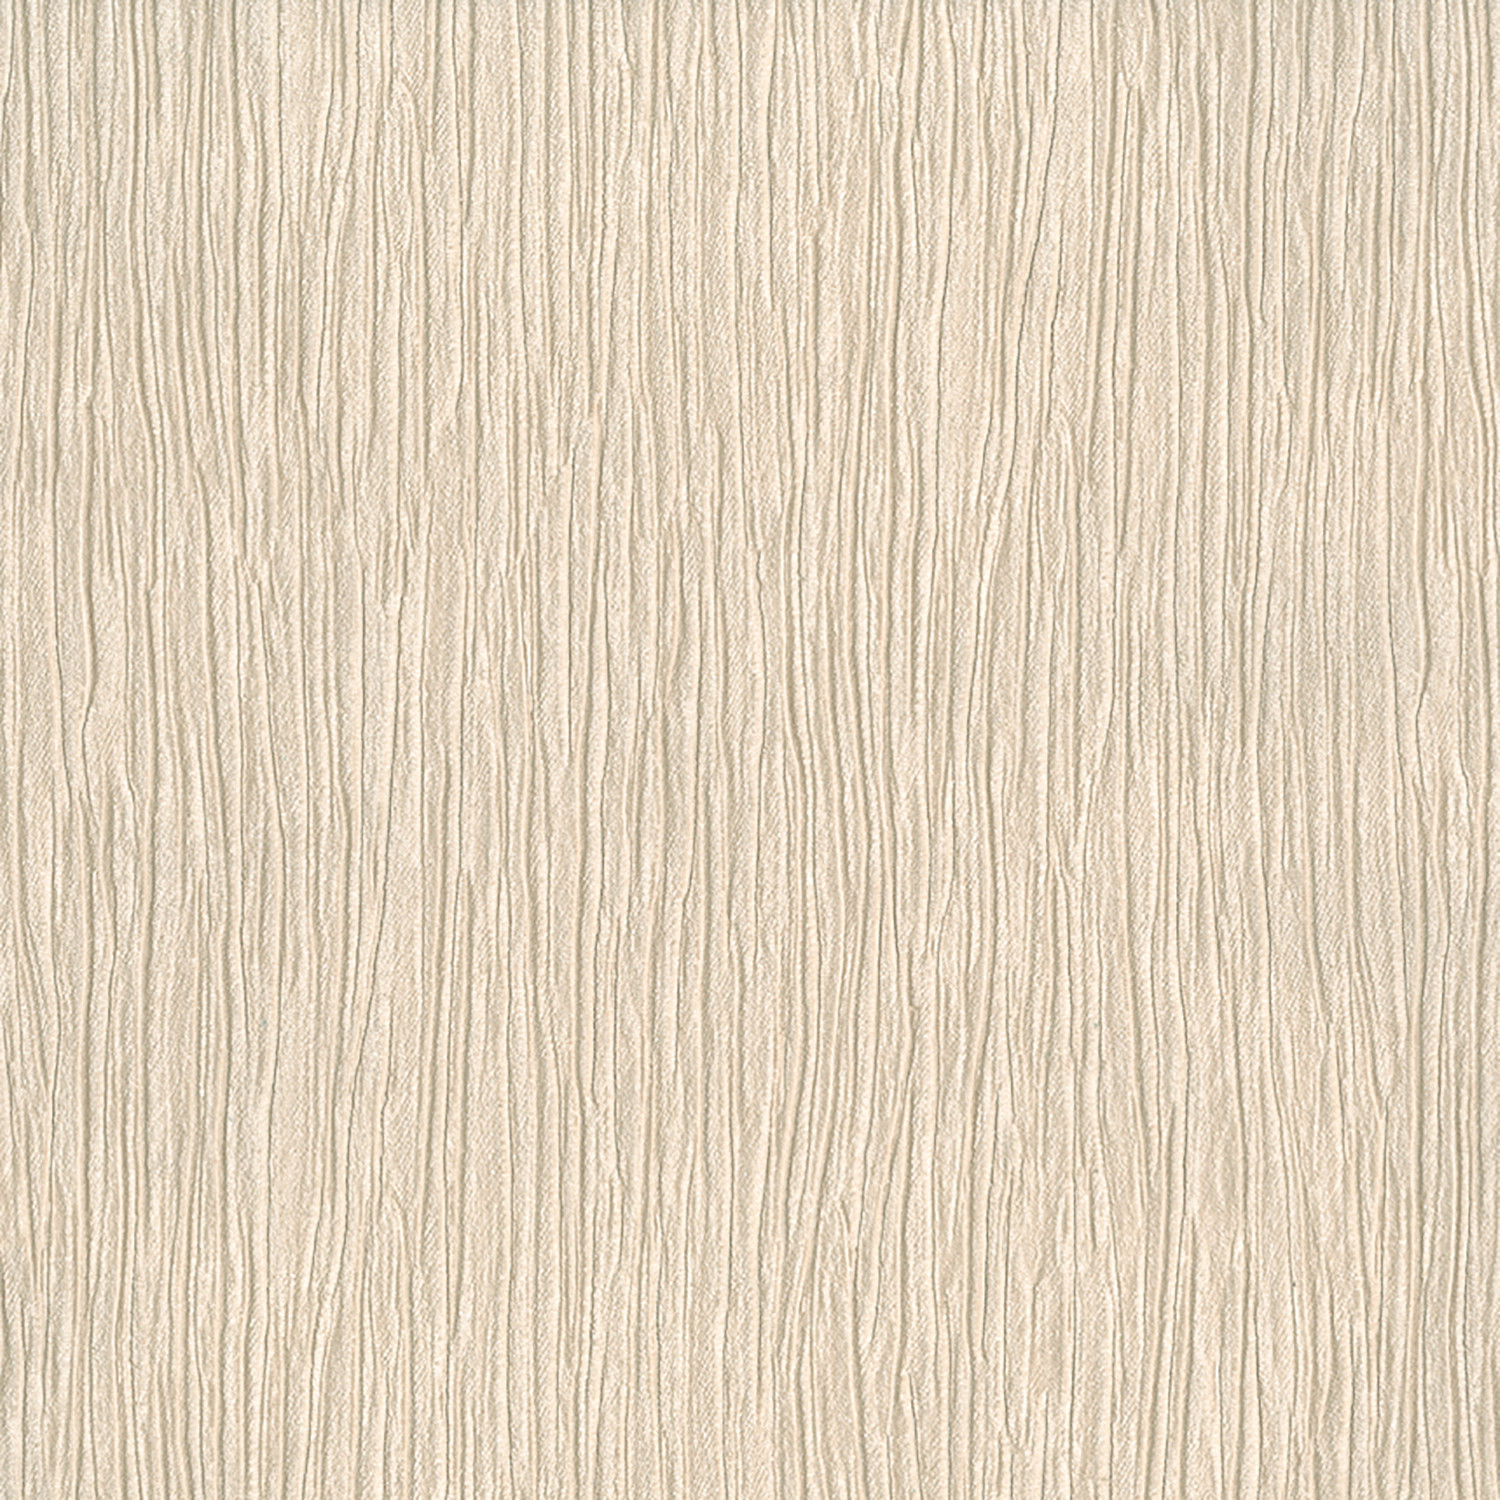 white brick wallpaper,beige,wood,flooring,wood flooring,plywood